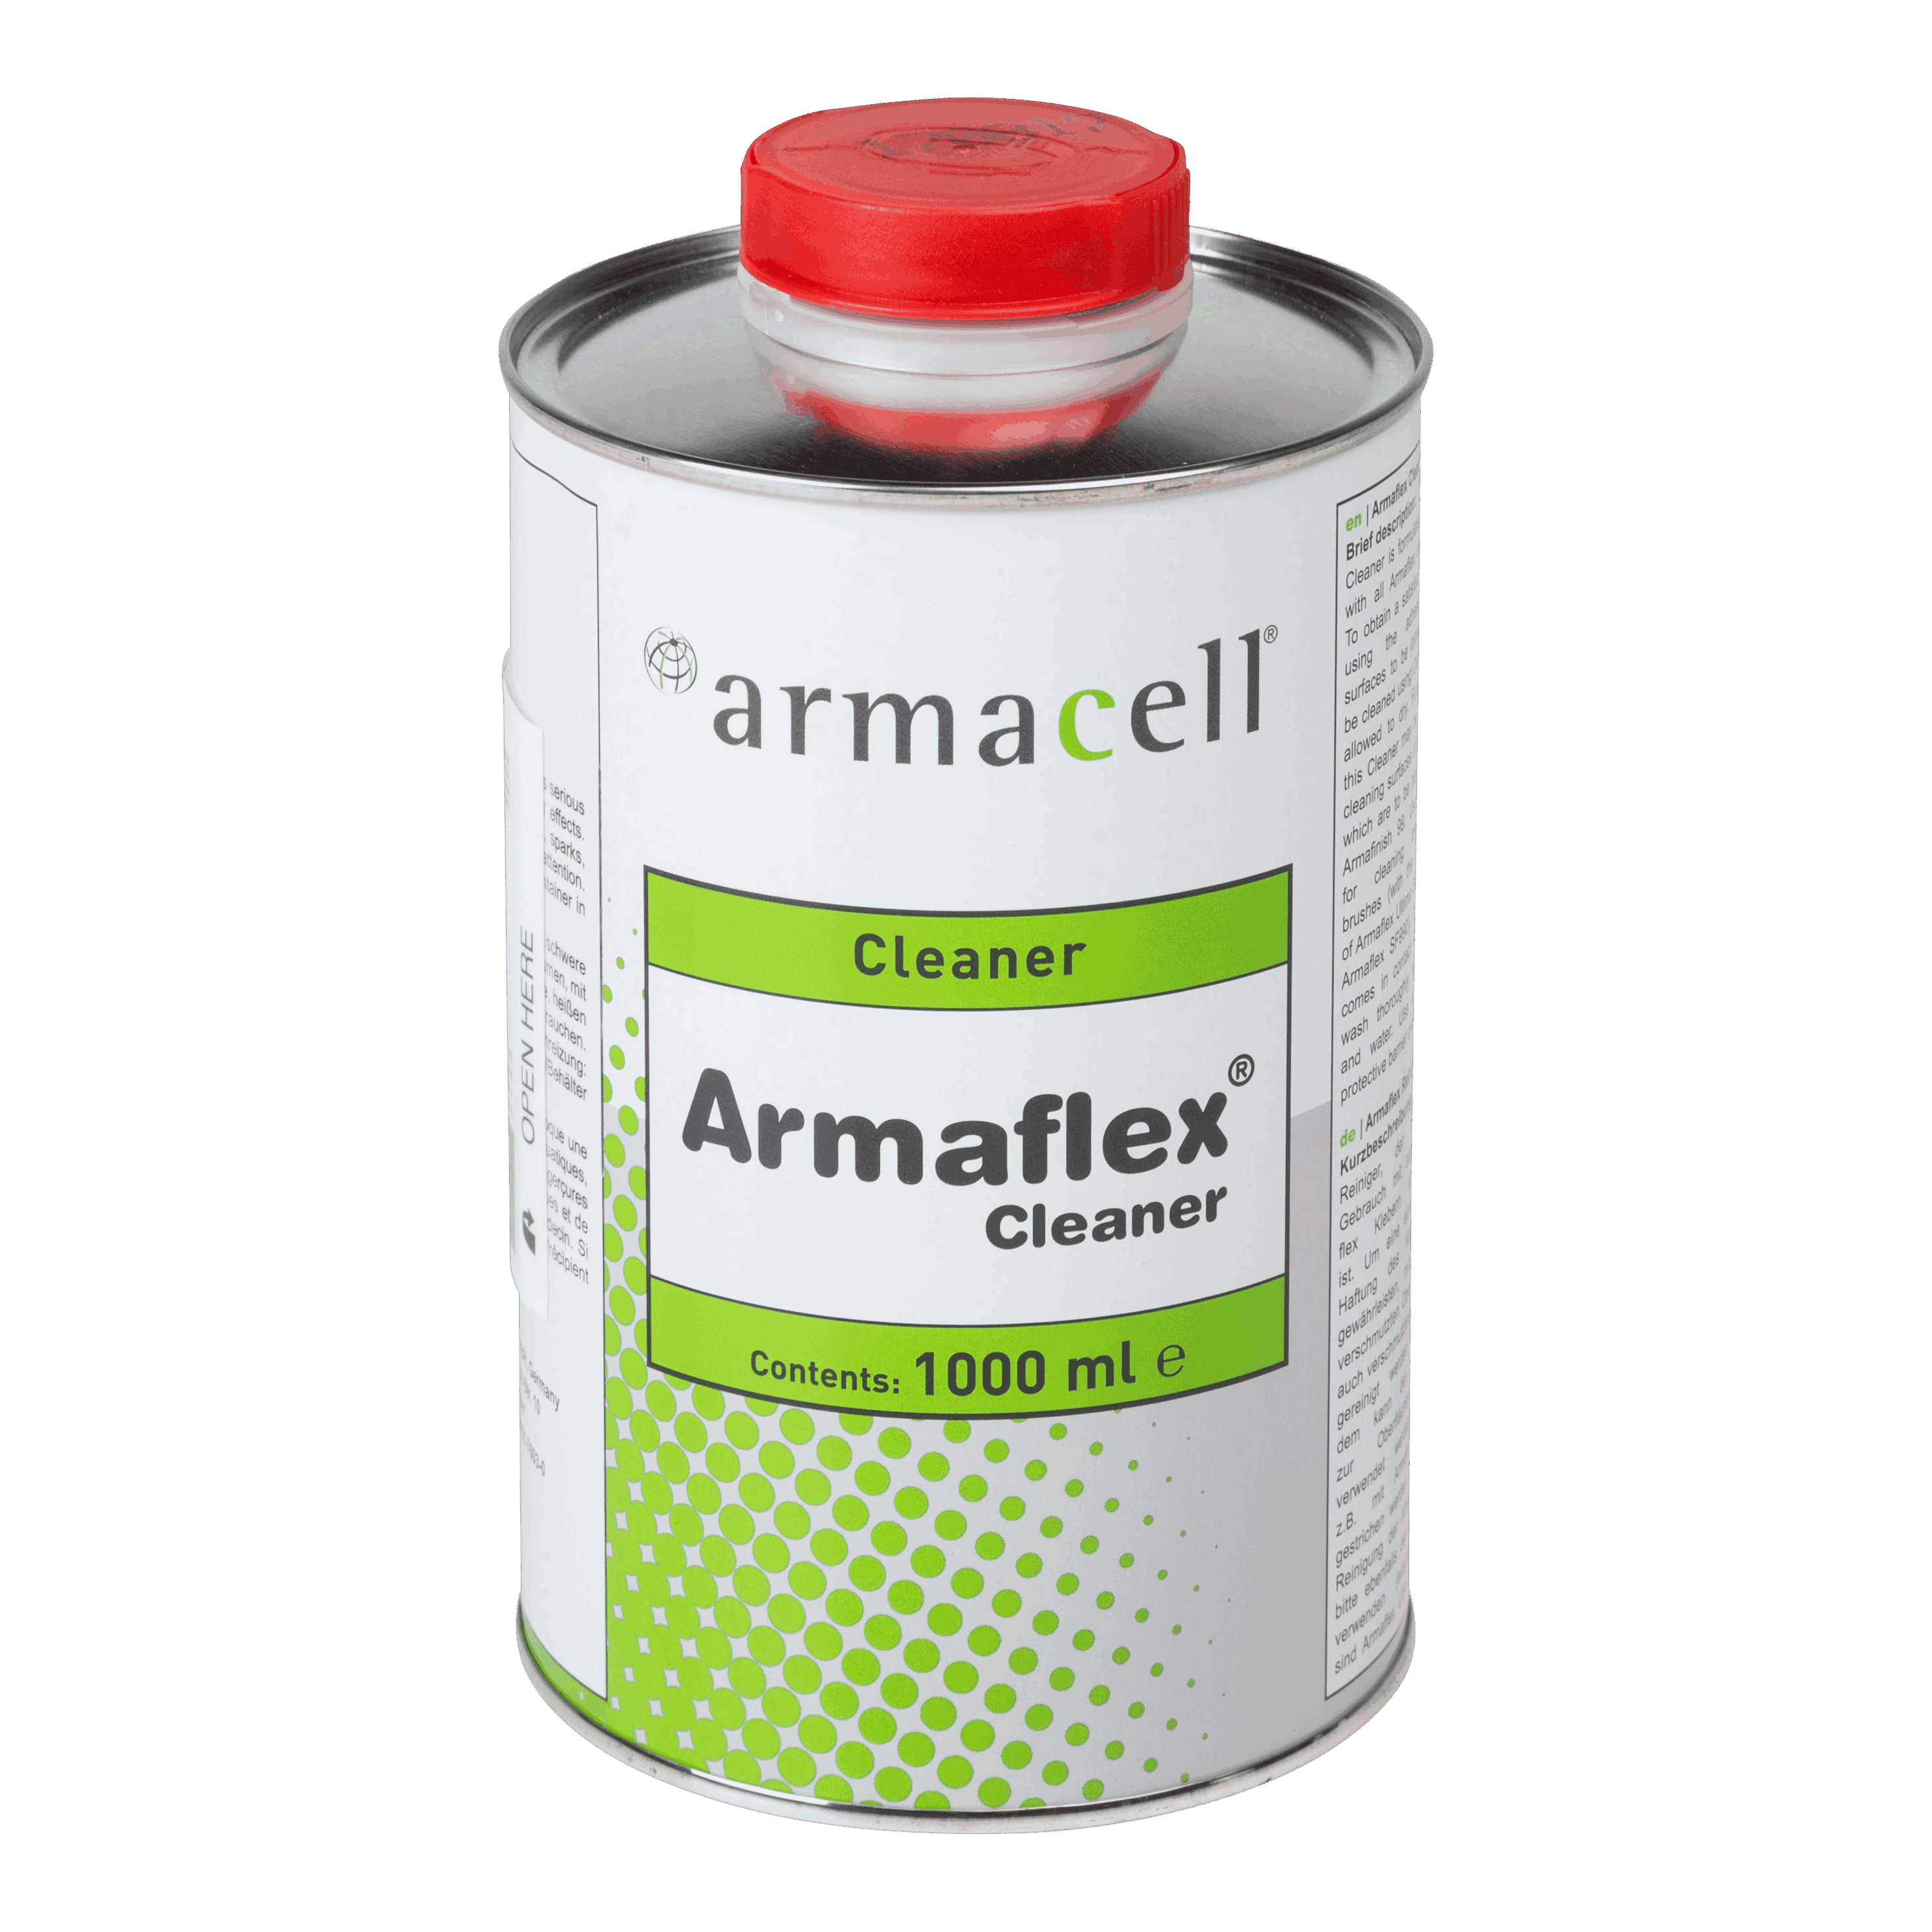 Armaflex Cleaner